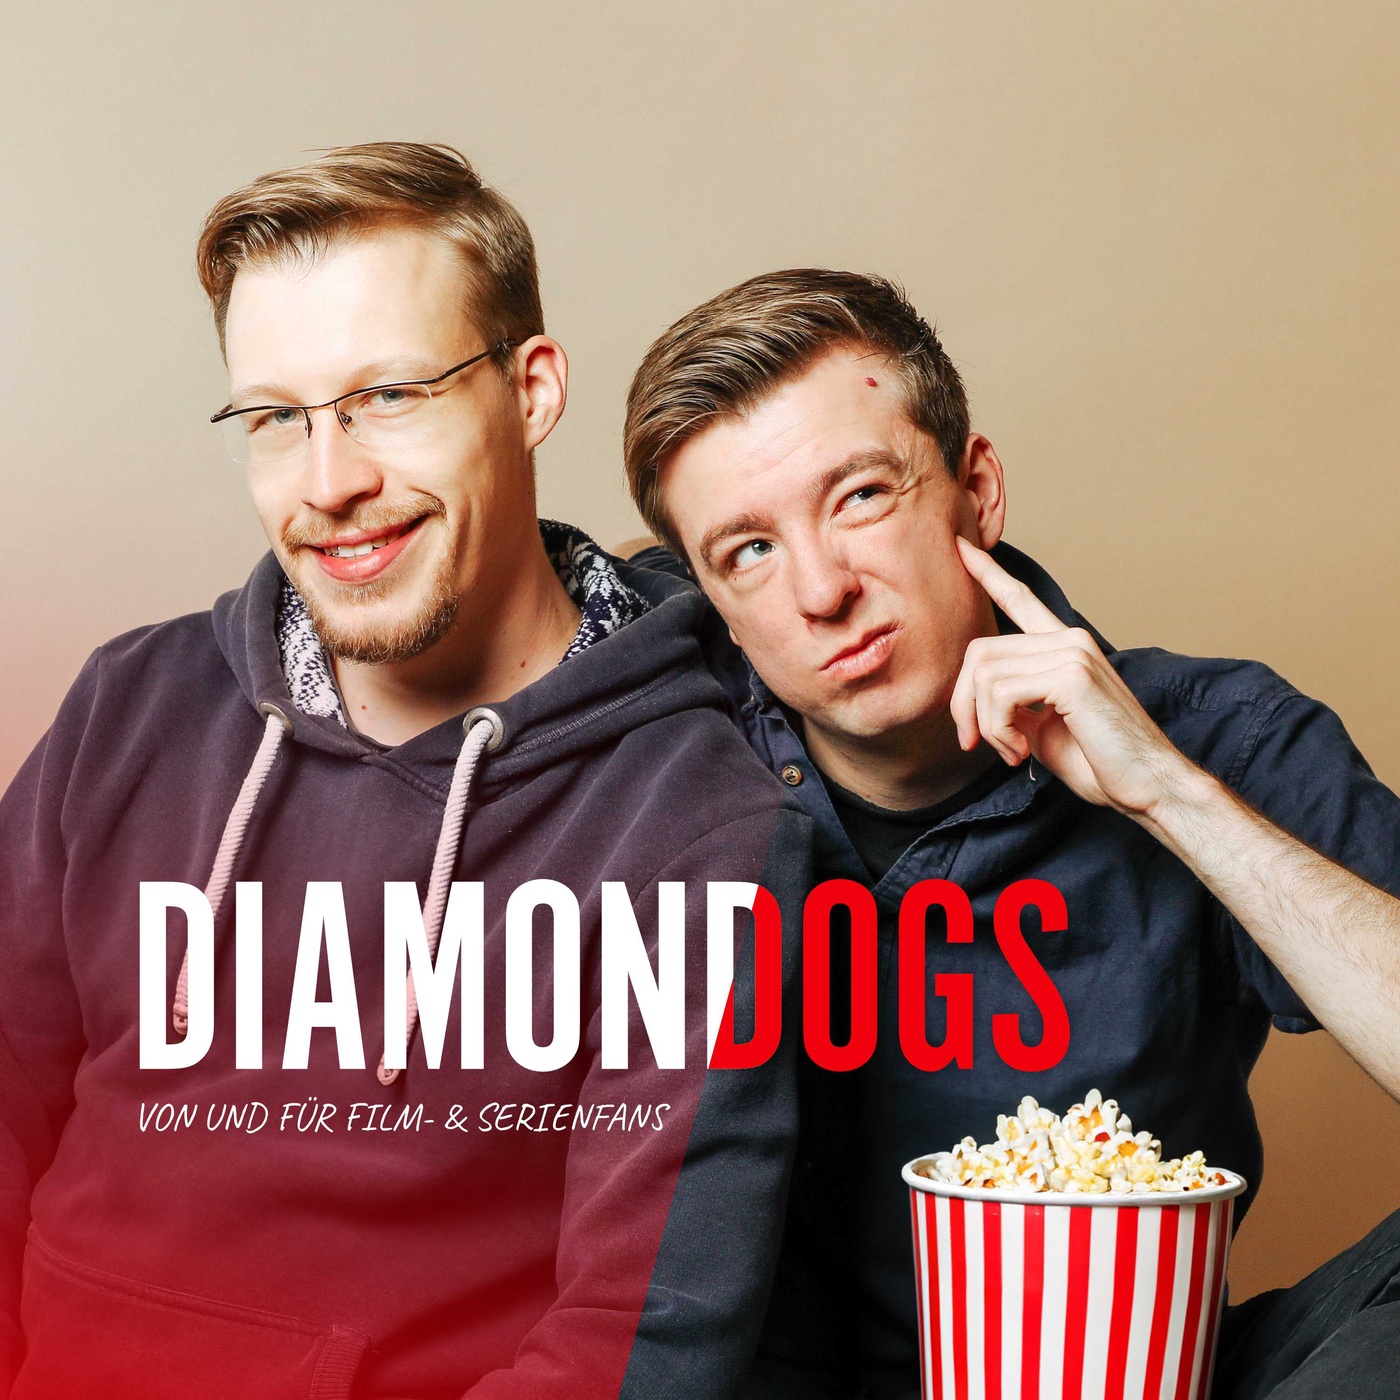 Diamond Dogs – Von und für Film- & Serienfans